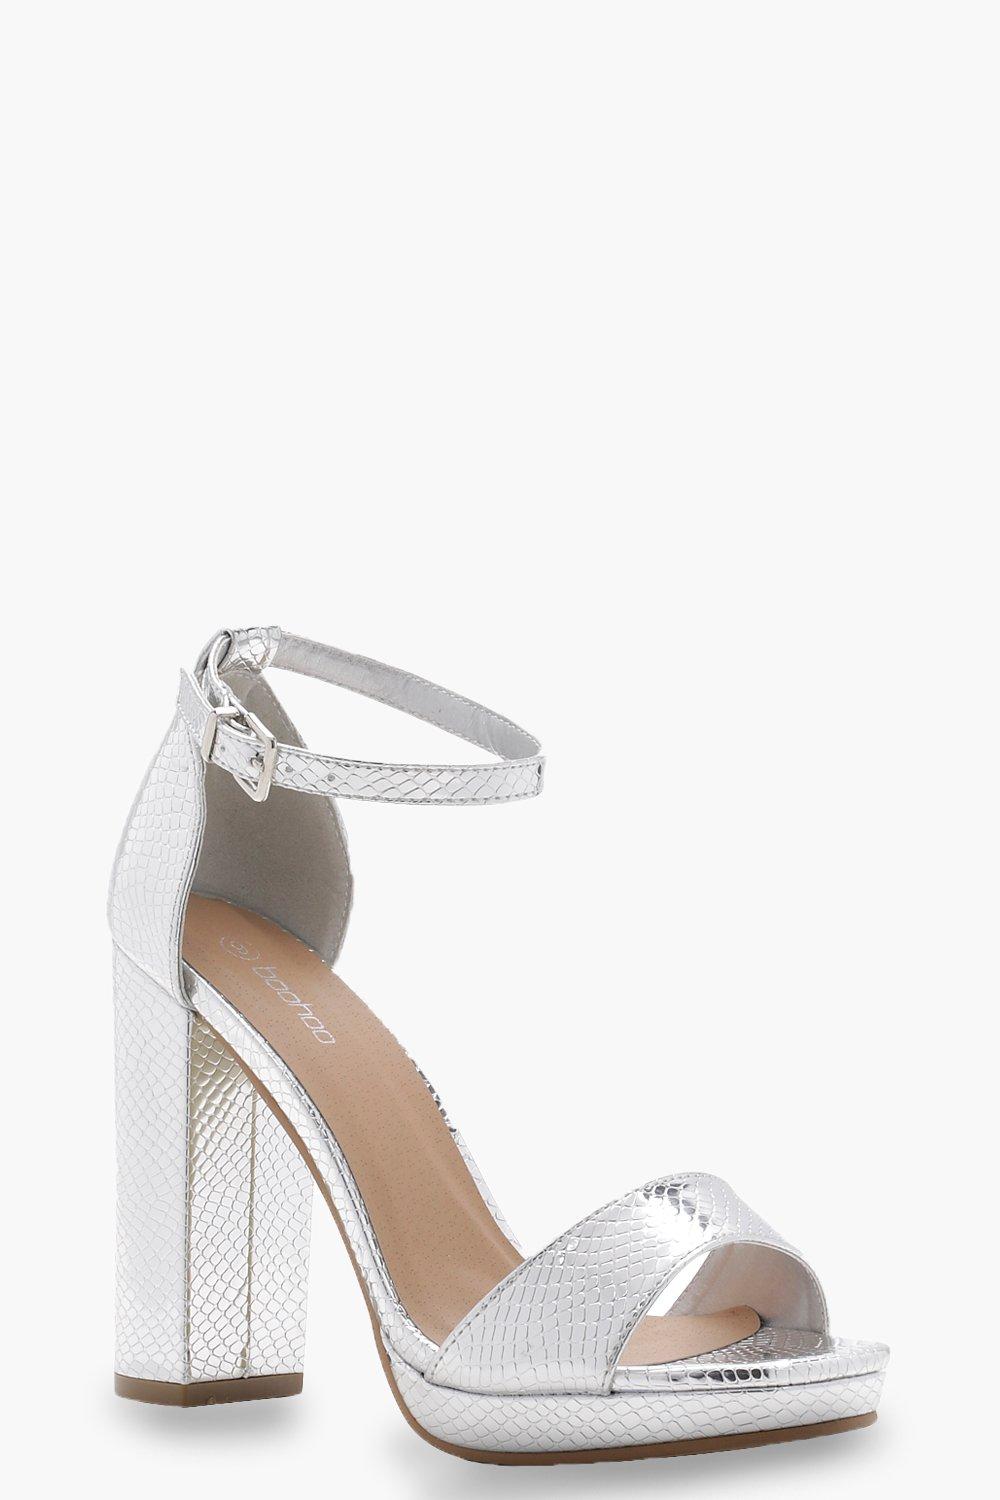 silver heels boohoo